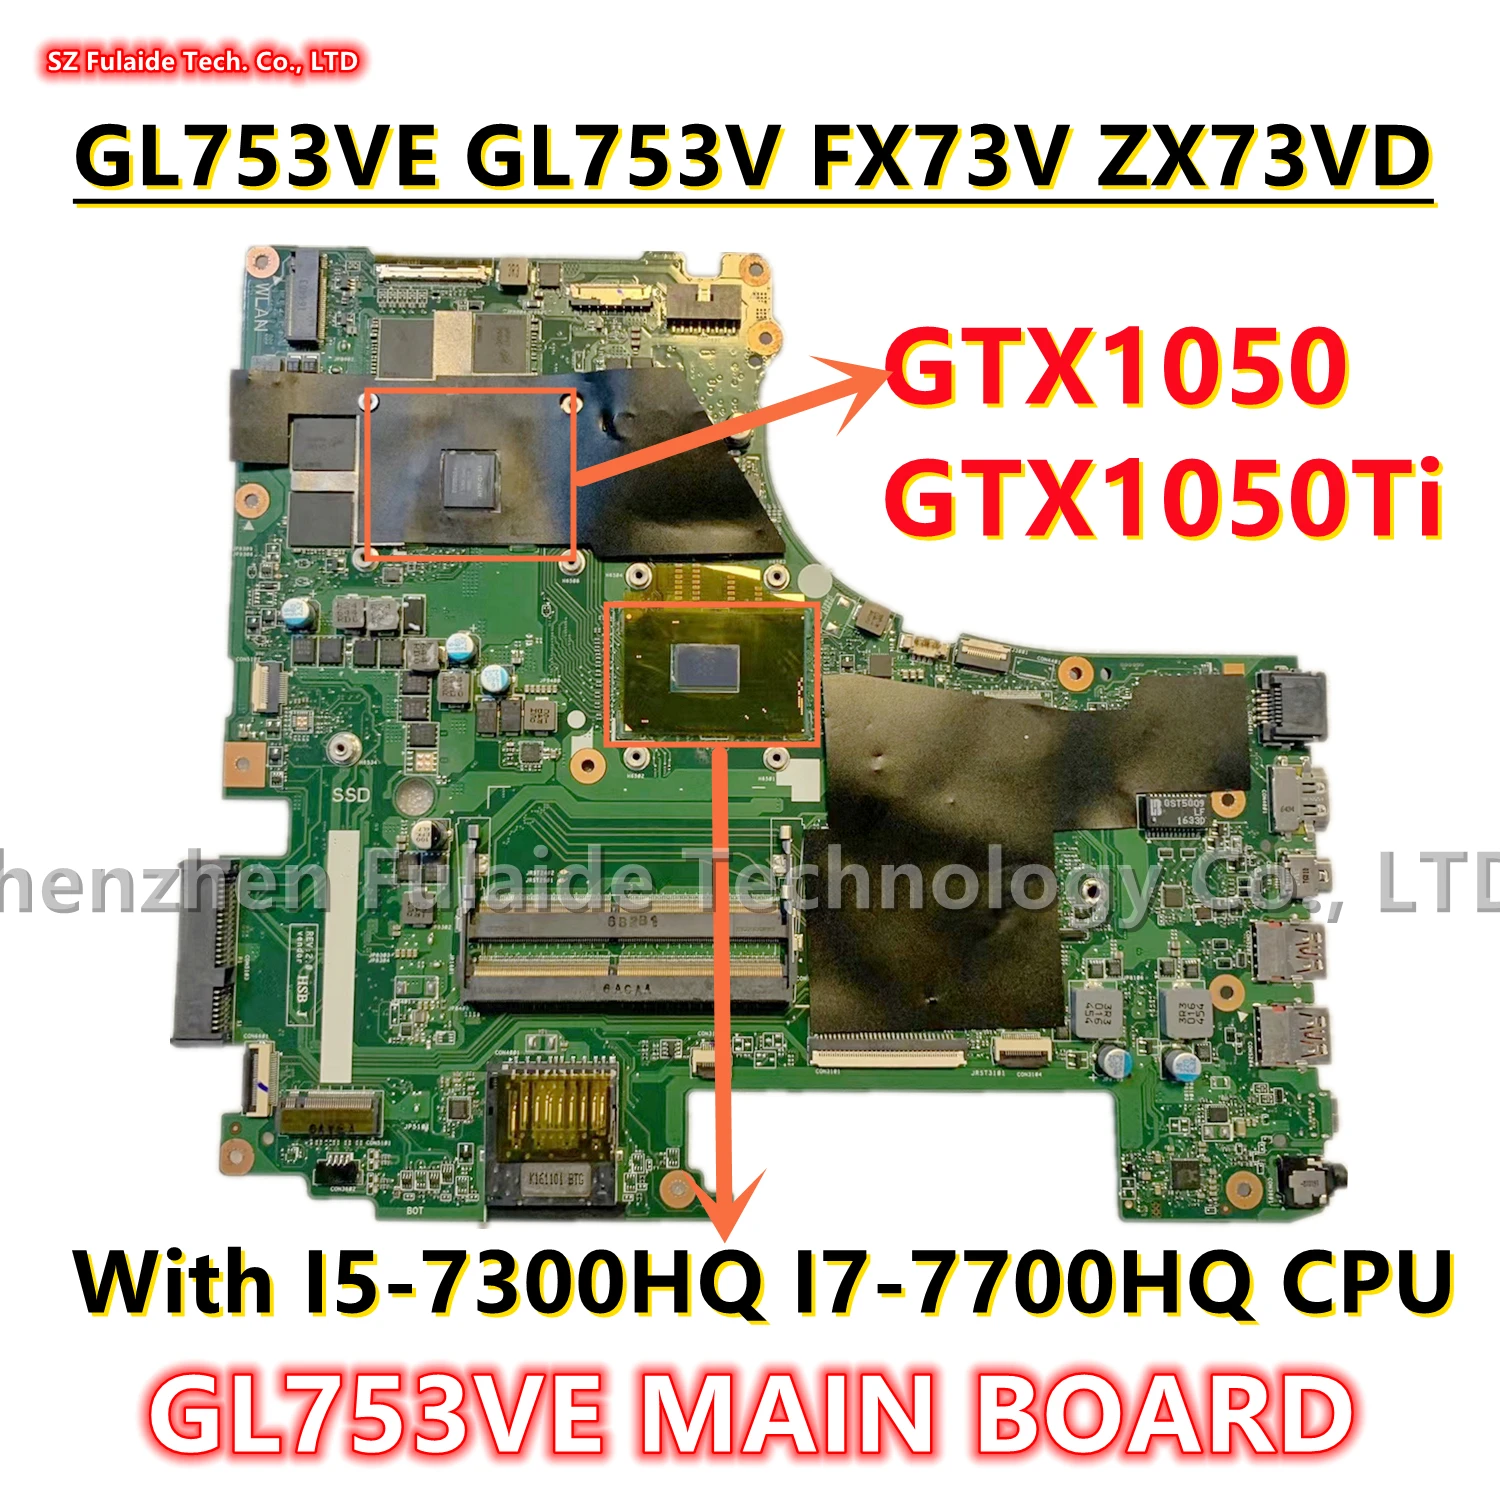 

GL753VE MAIN BOARD For GL753VD GL753VE FX753V ZX753V GL753V GL753 Laptop Motherboard I5-7300HQ I7-7700HQ CPU GTX1050 GTX1050TI